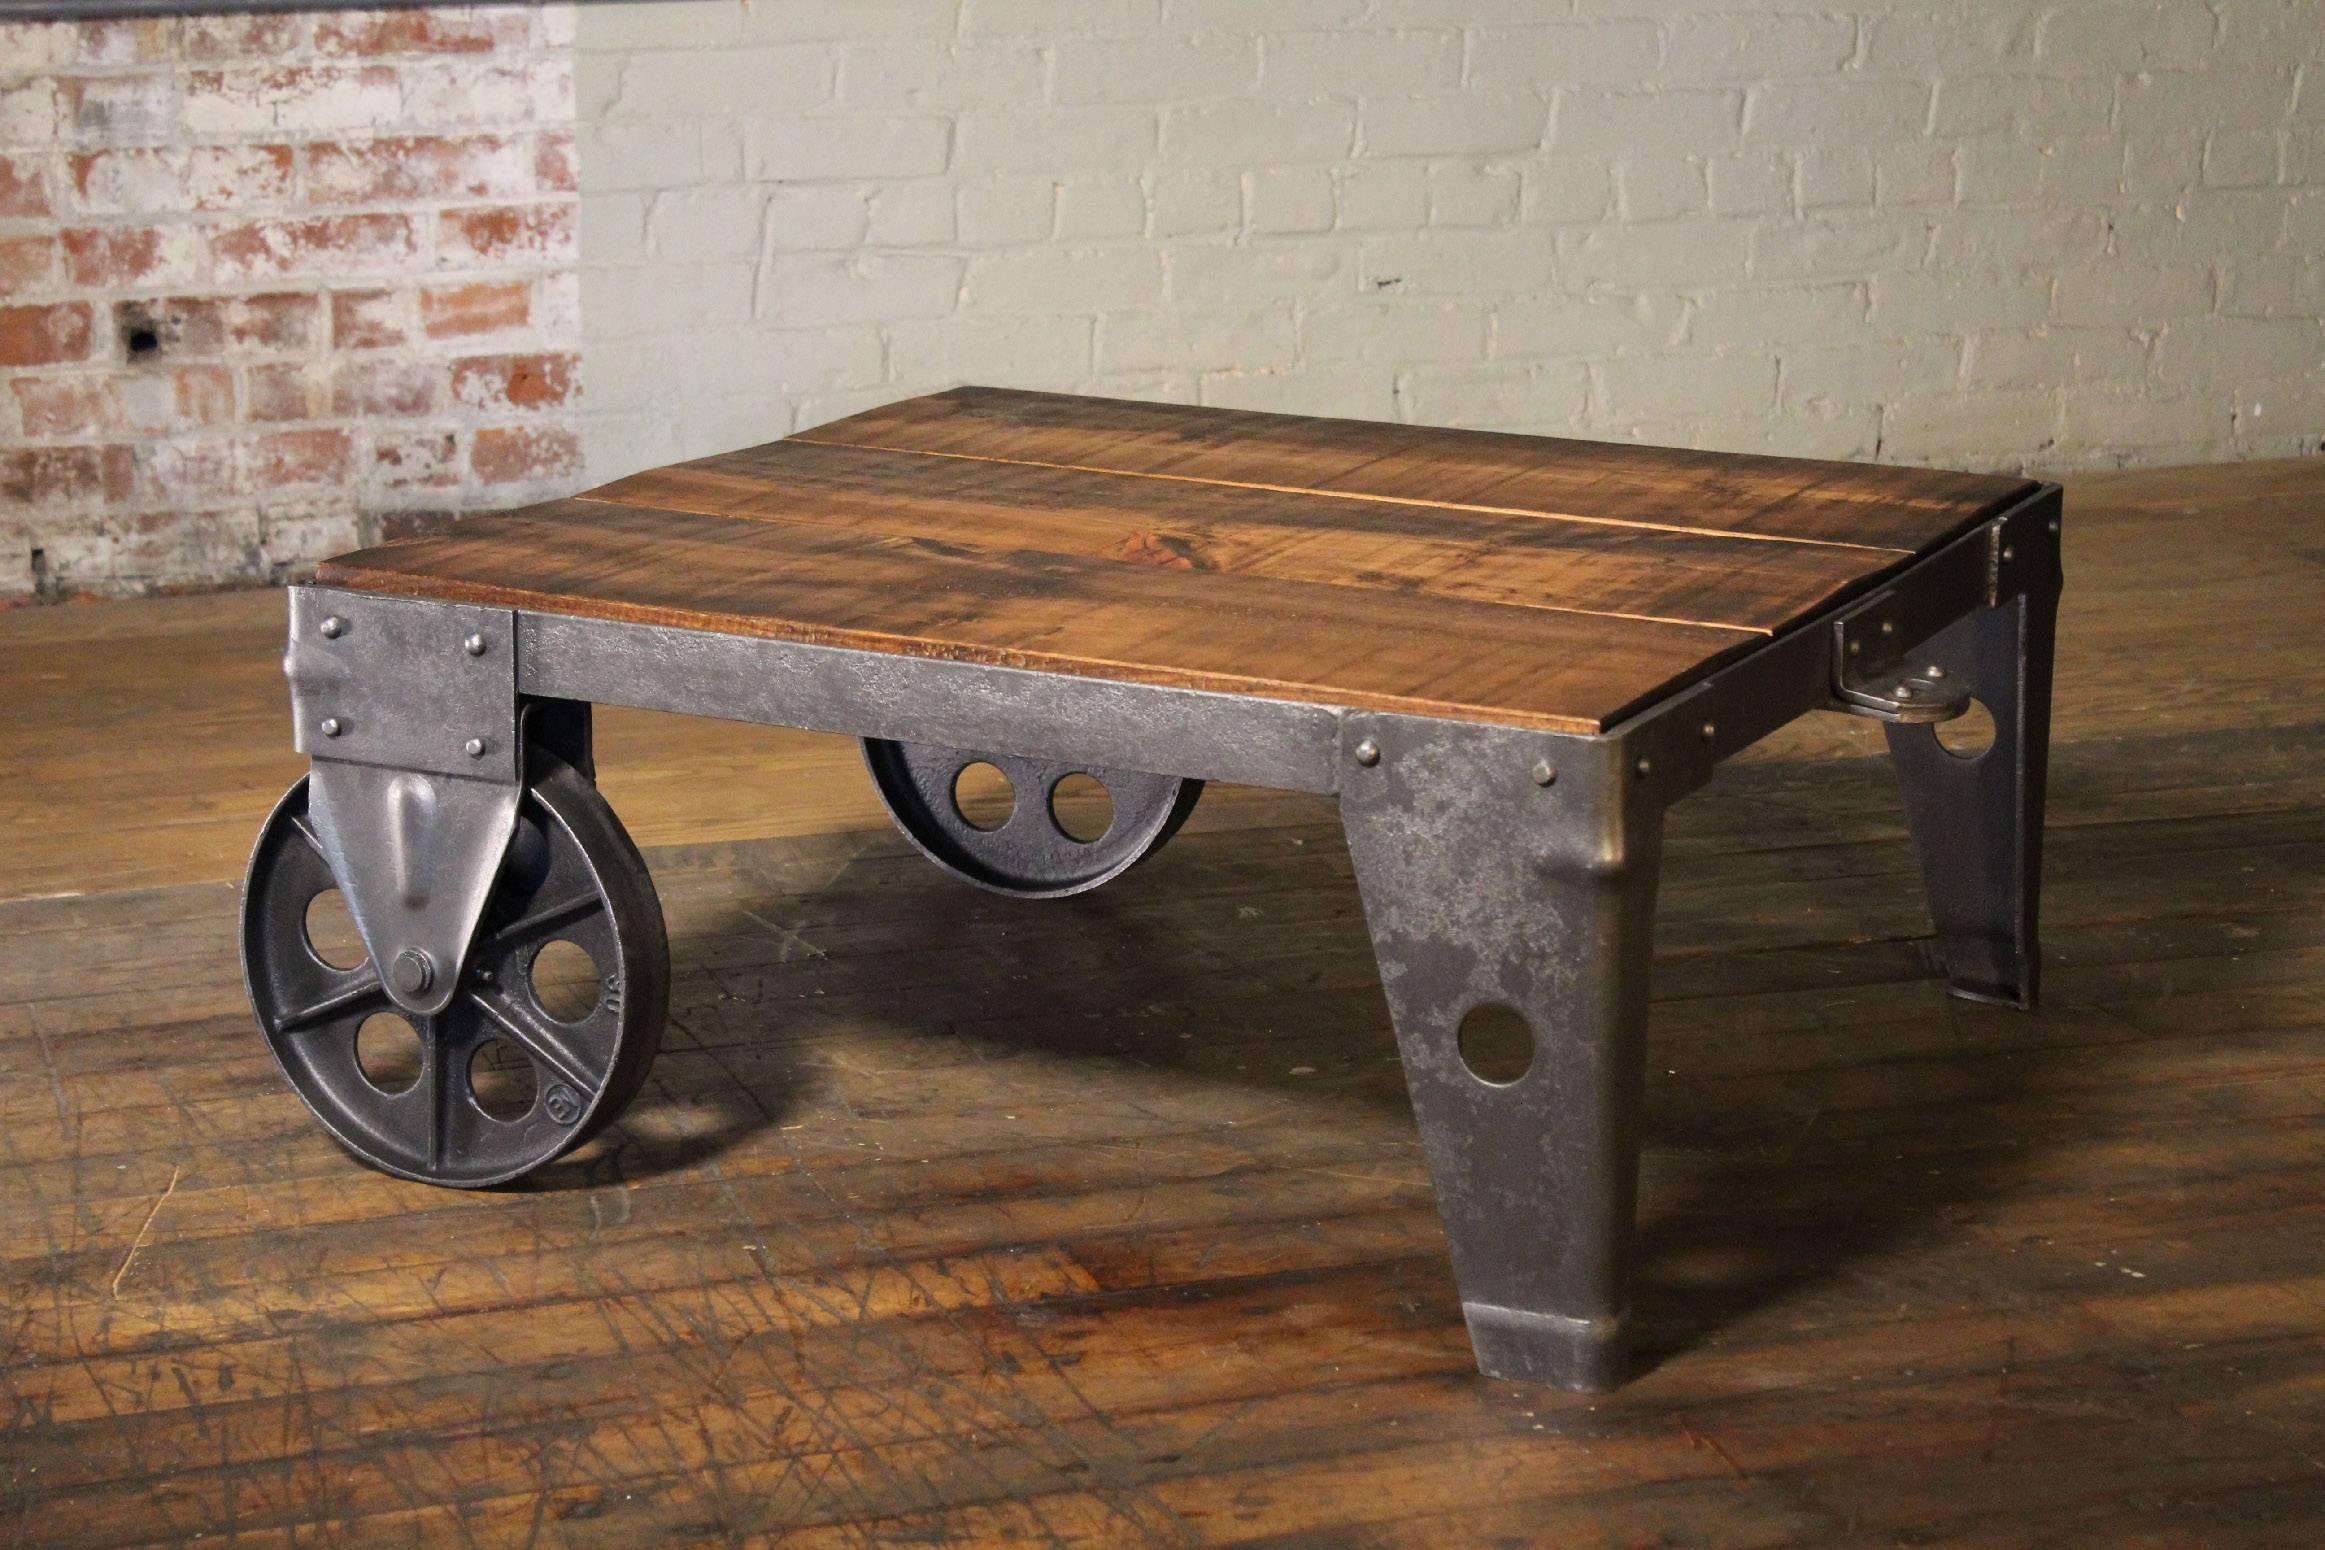 Authentique et originale table basse ou chariot industriel moderne vintage, fabriqué en pin brut de sciage, acier, métal et fonte. Le dessus en bois mesure 32